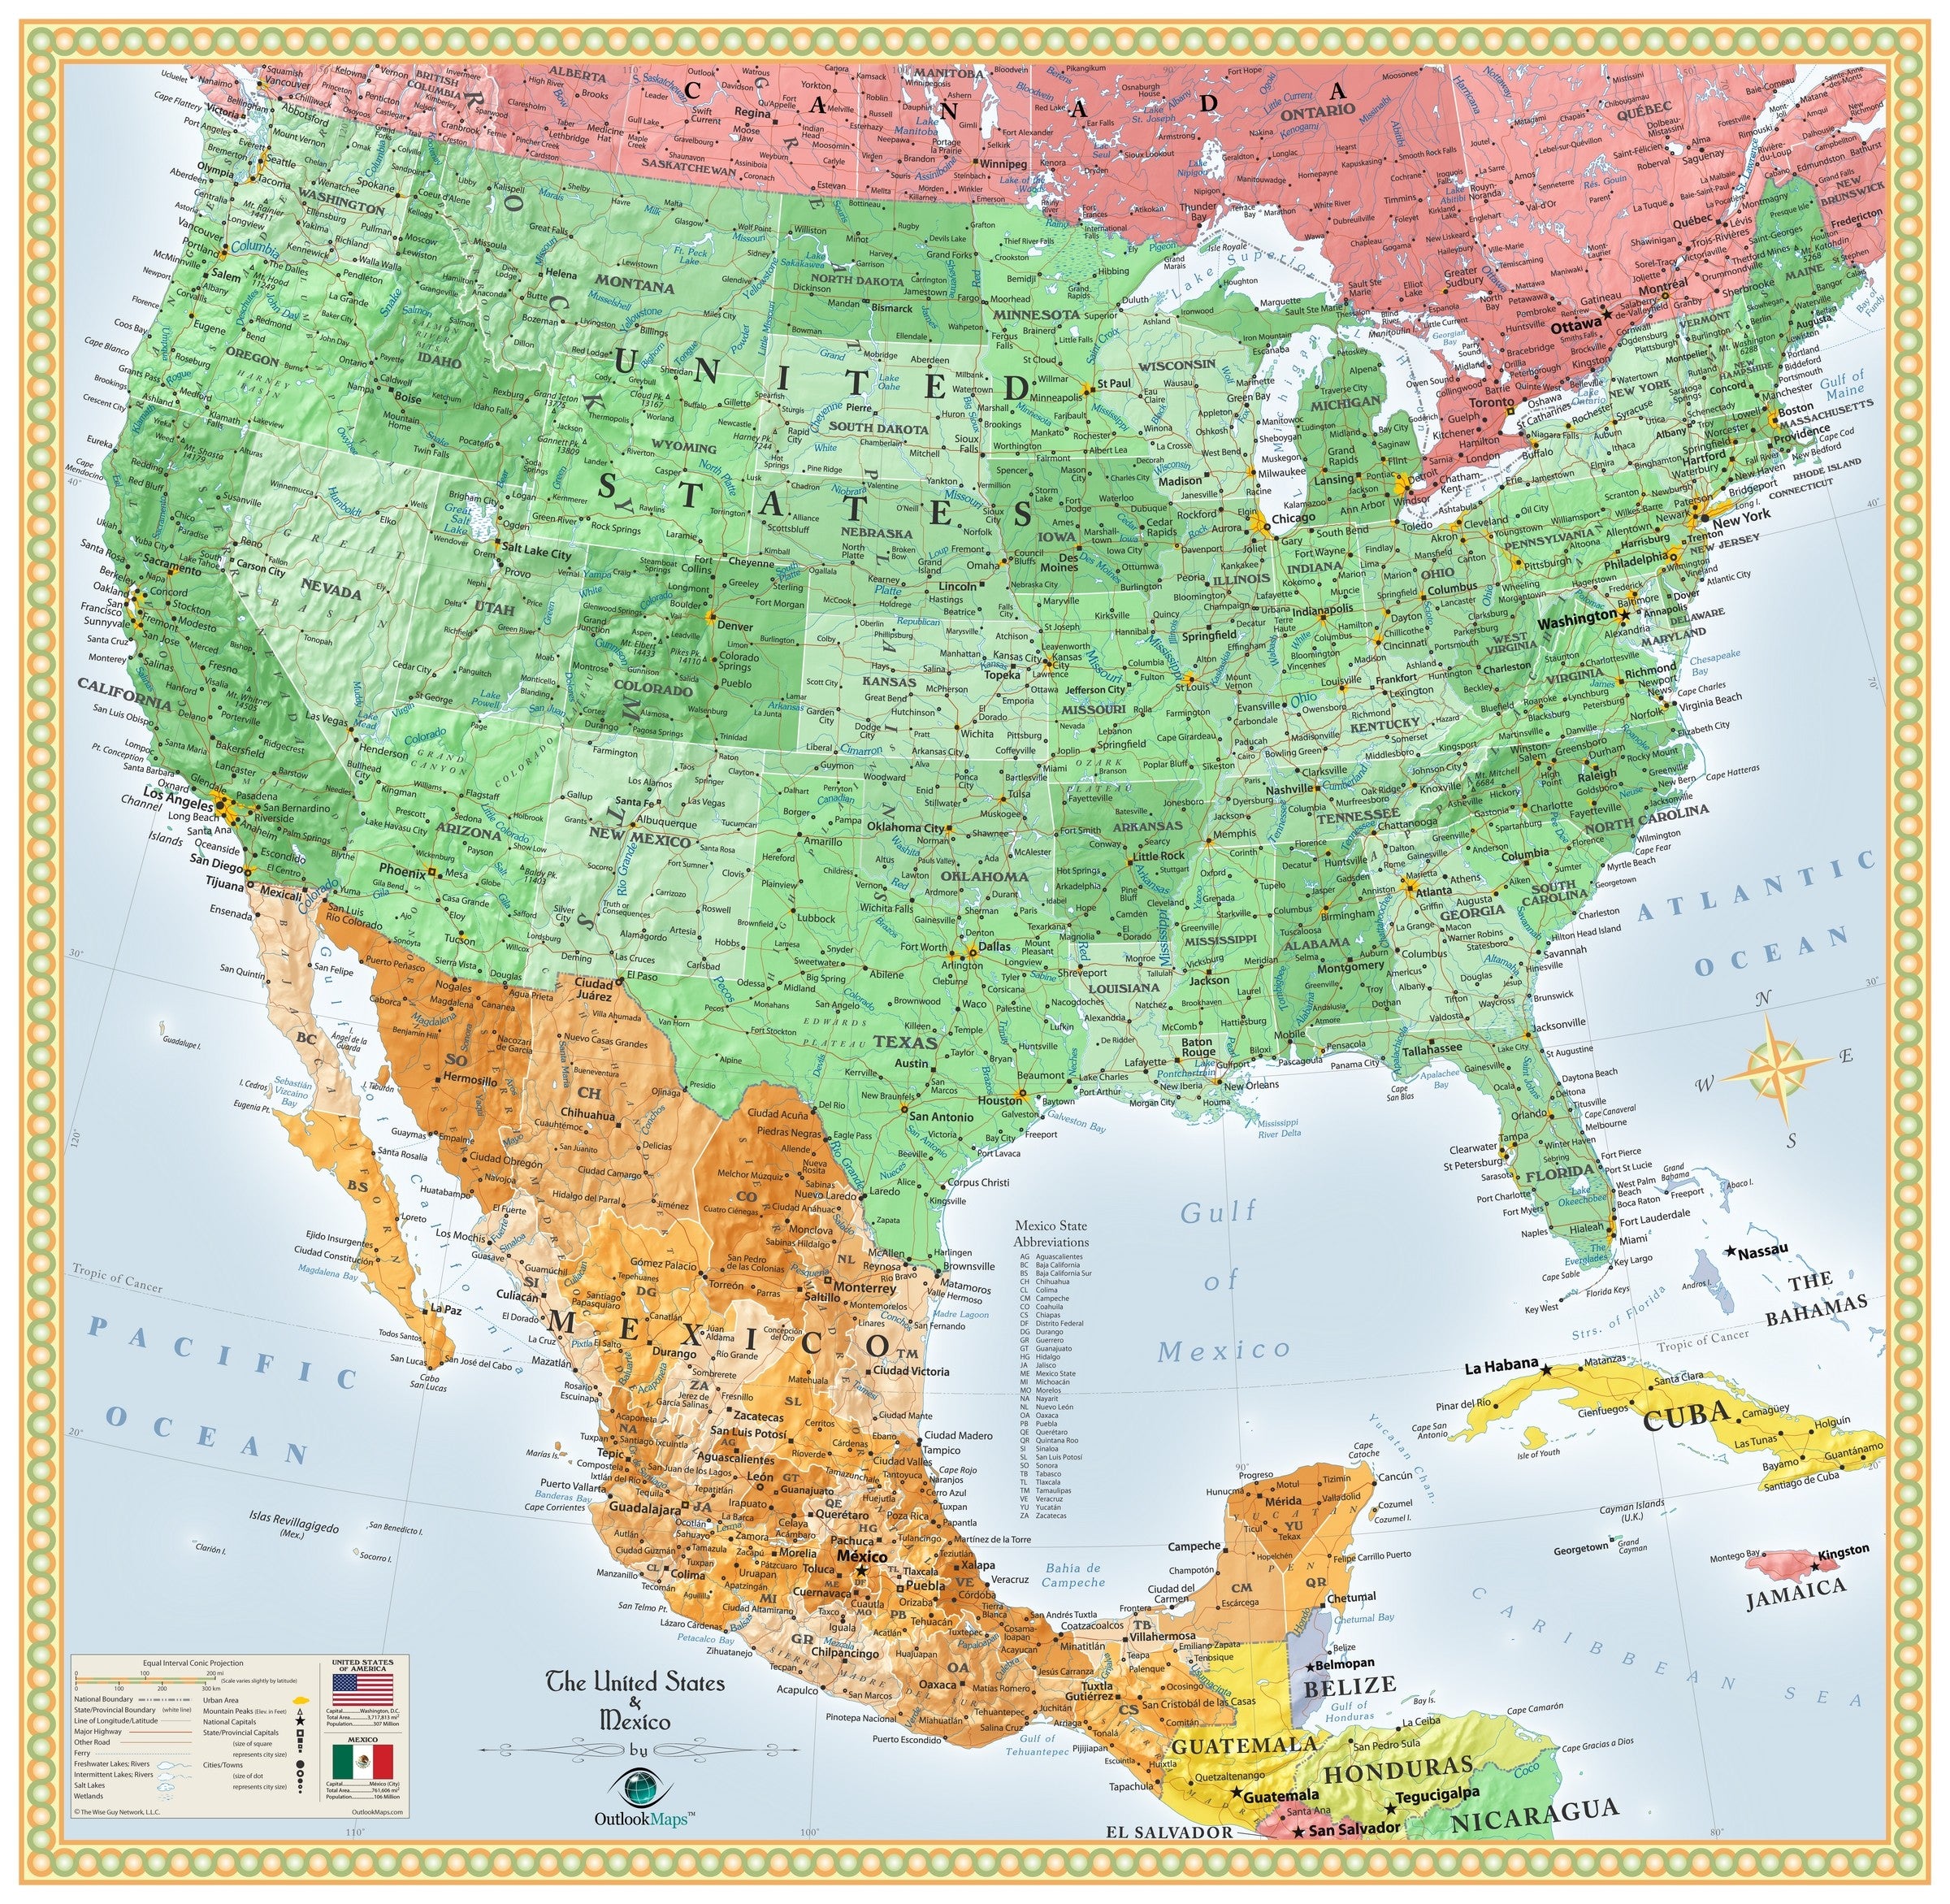 USA and Mexico Wall Map | Maps.com.com